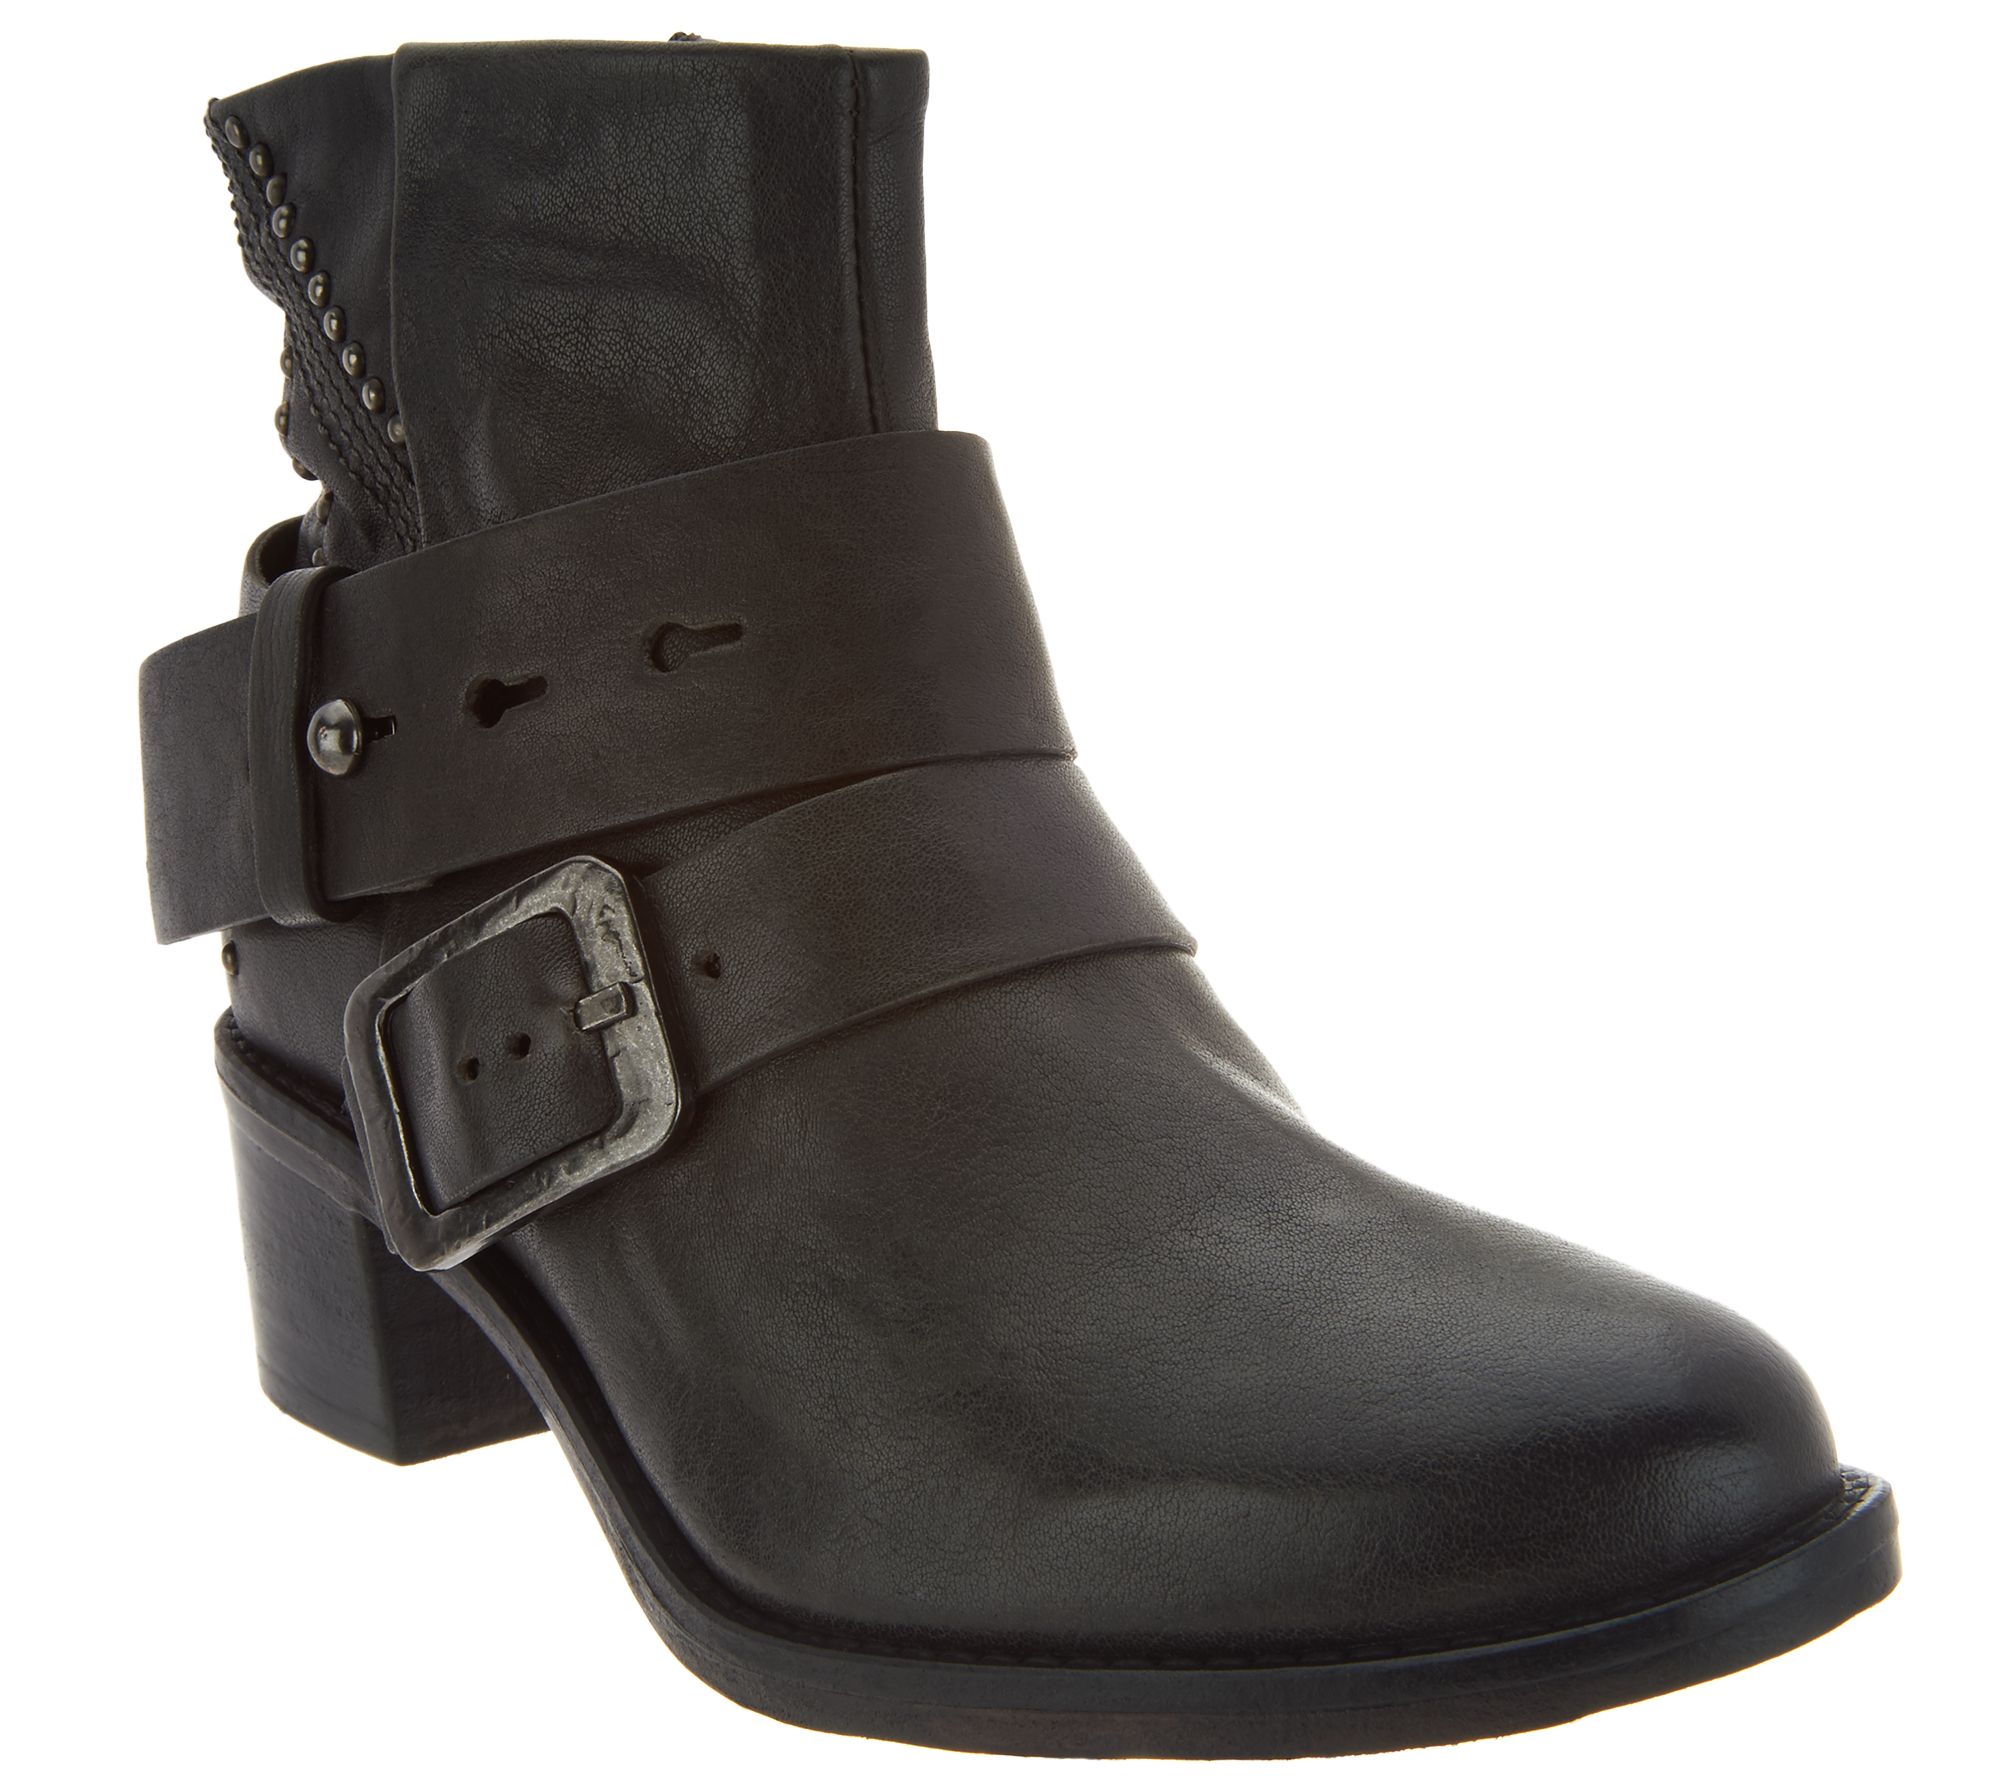 Miz Mooz Leather Ankle Boots w/ Stud Details - Faithful - Page 1 — QVC.com